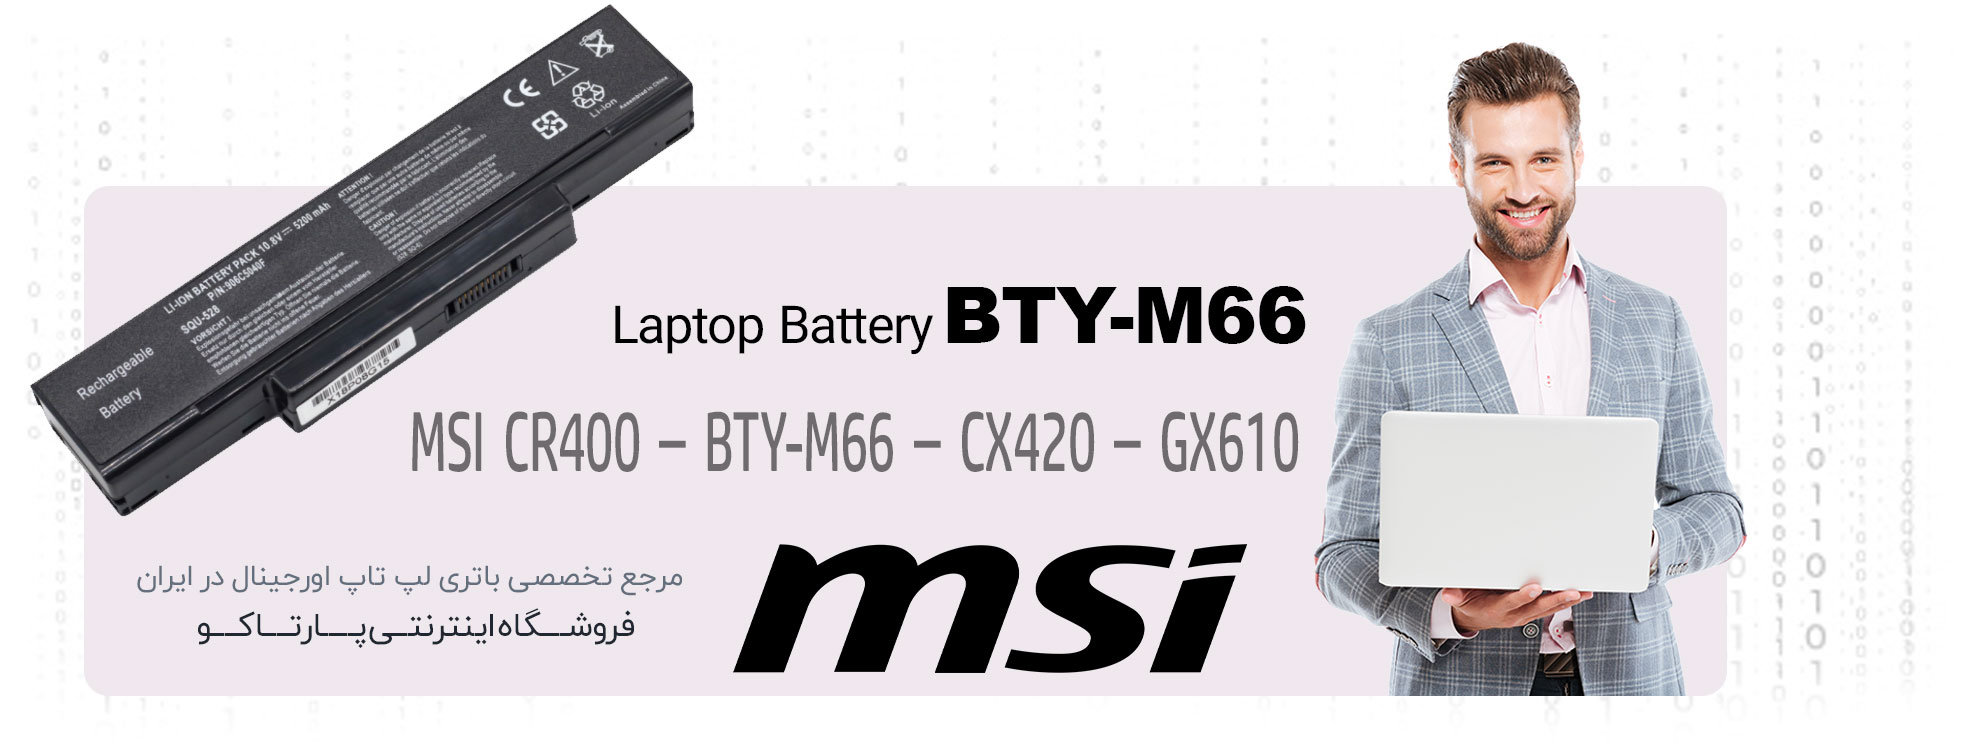 باتری BTY-M66